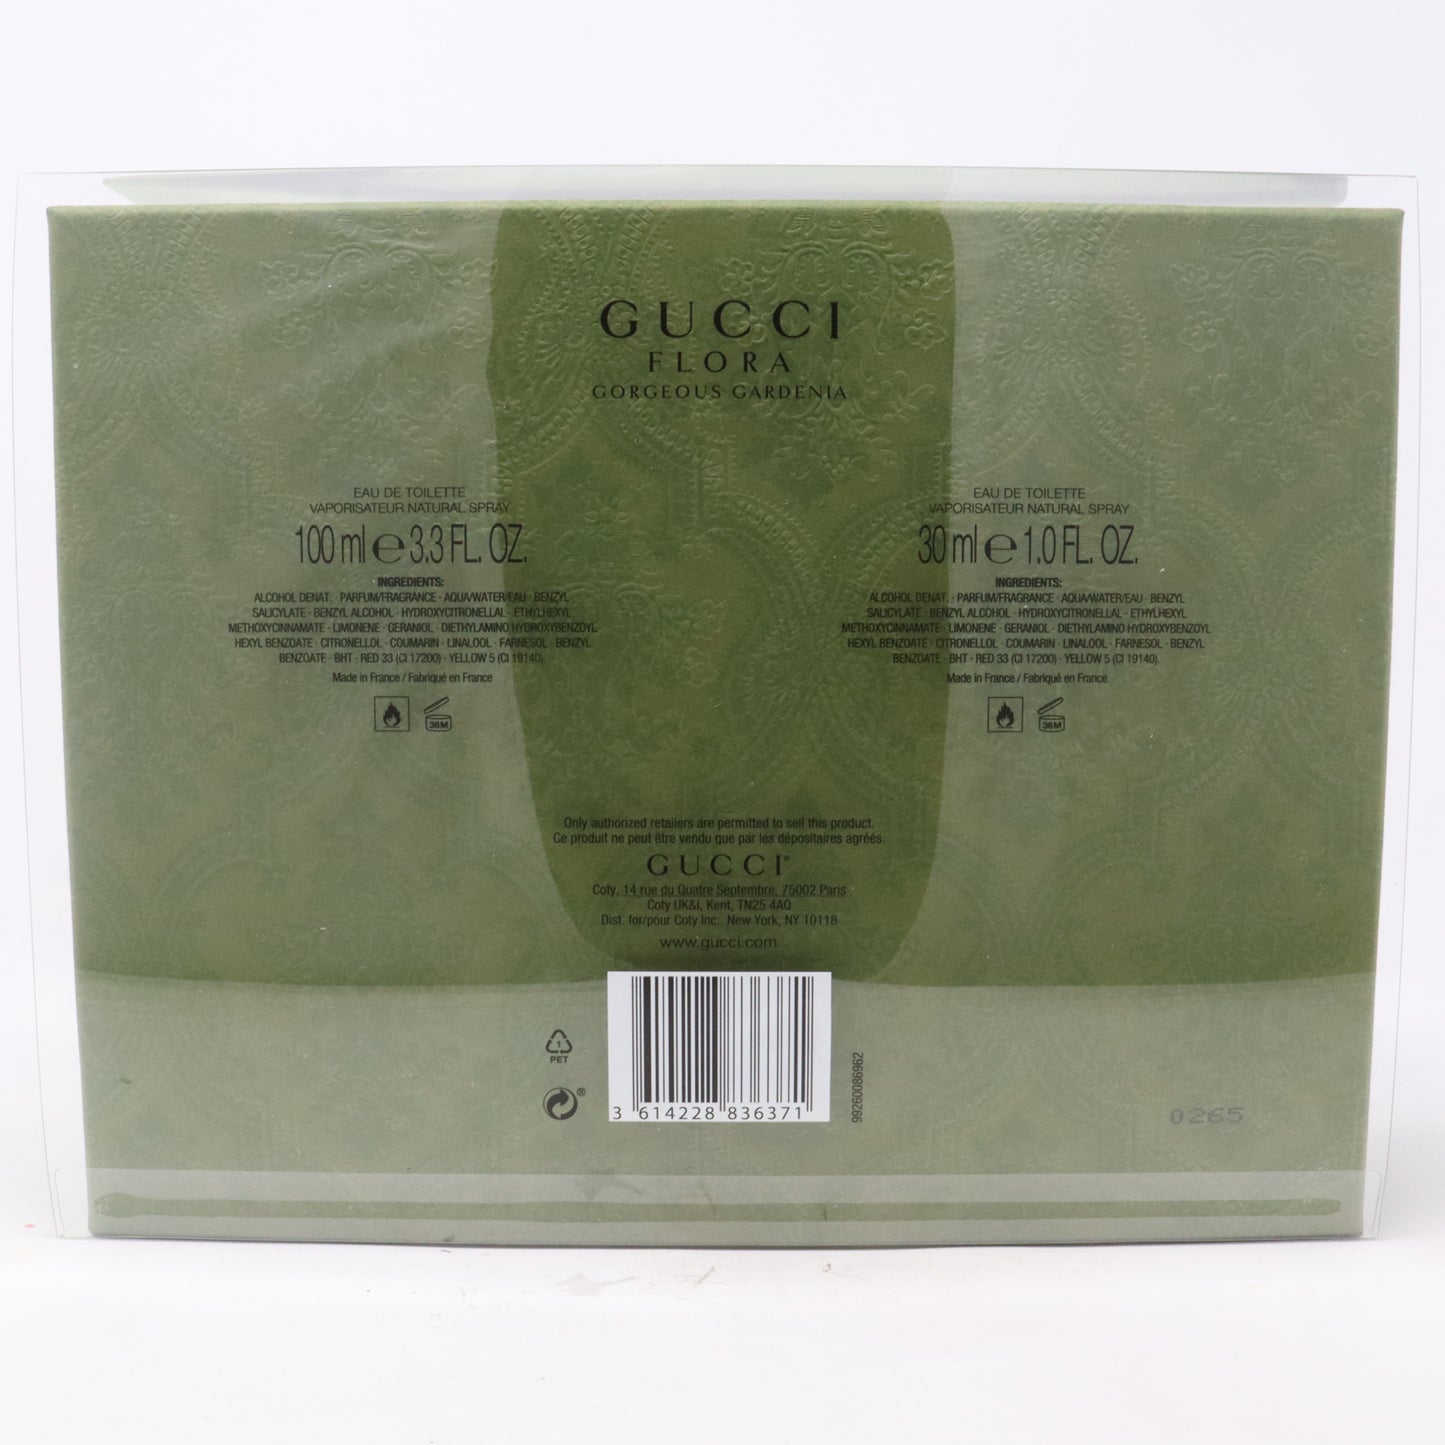 Gucci Flora Gorgeous Gardenia Eau De Toilette 2 Pcs Gift Set  / New With Box